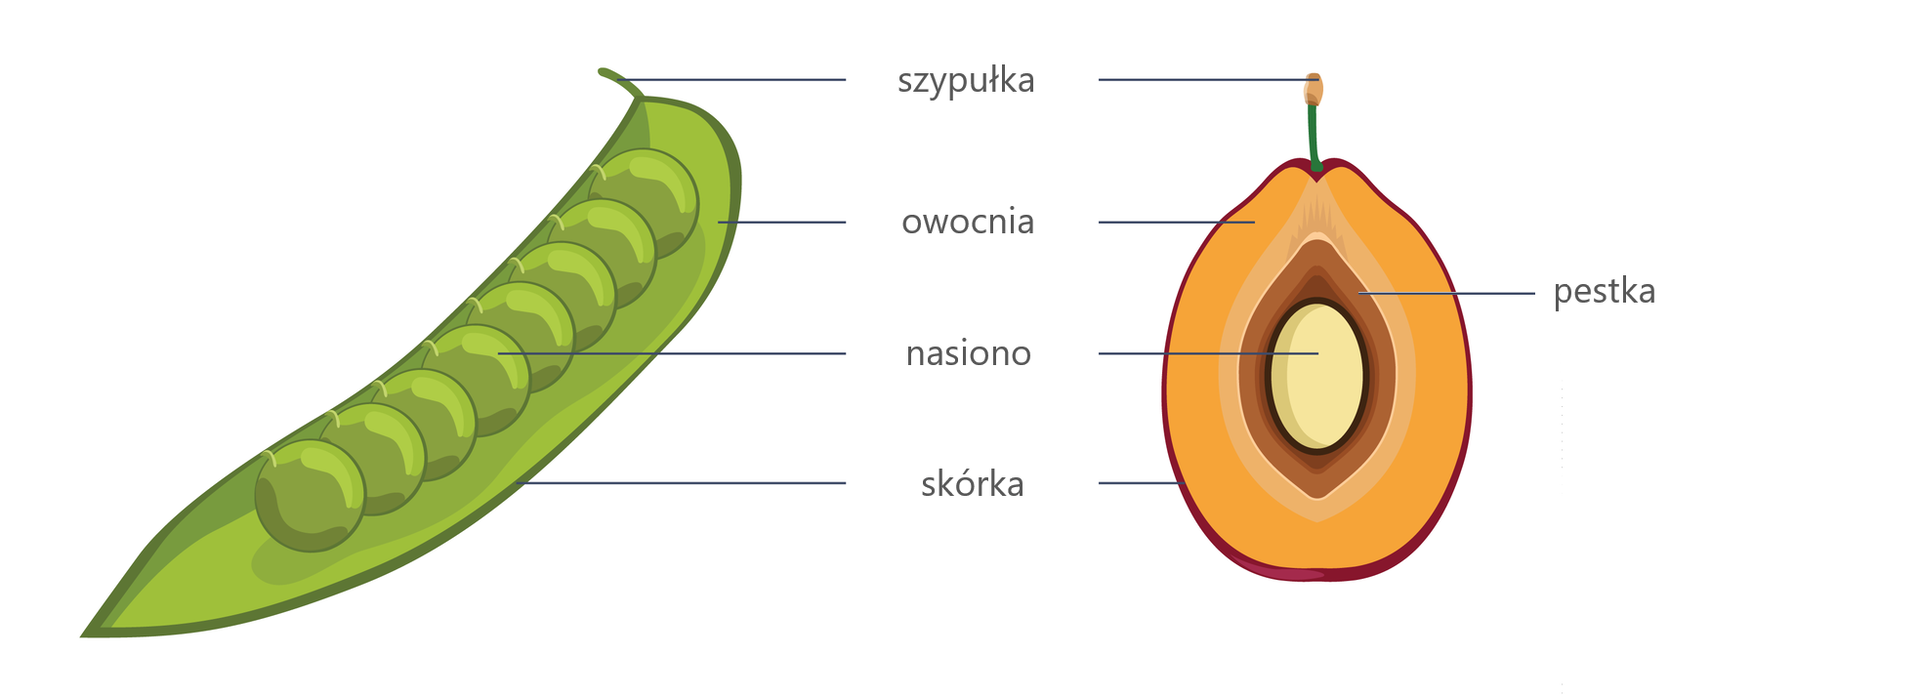 Ilustracja przedstawia dwa owoce: zielony strąk grochu i żółto‑brązową śliwkę. Zaznaczono na nich szypułkę (u góry obu owoców), owocnię (łupina grochu i miąższ śliwki), nasiono (okrągły groszek i centralnie położone jasne nasiono śliwki) oraz skórkę (zewnętrzna okrywa obu owoców). Z prawej strony podpisano brązową pestkę śliwki, otaczającą nasiono. 